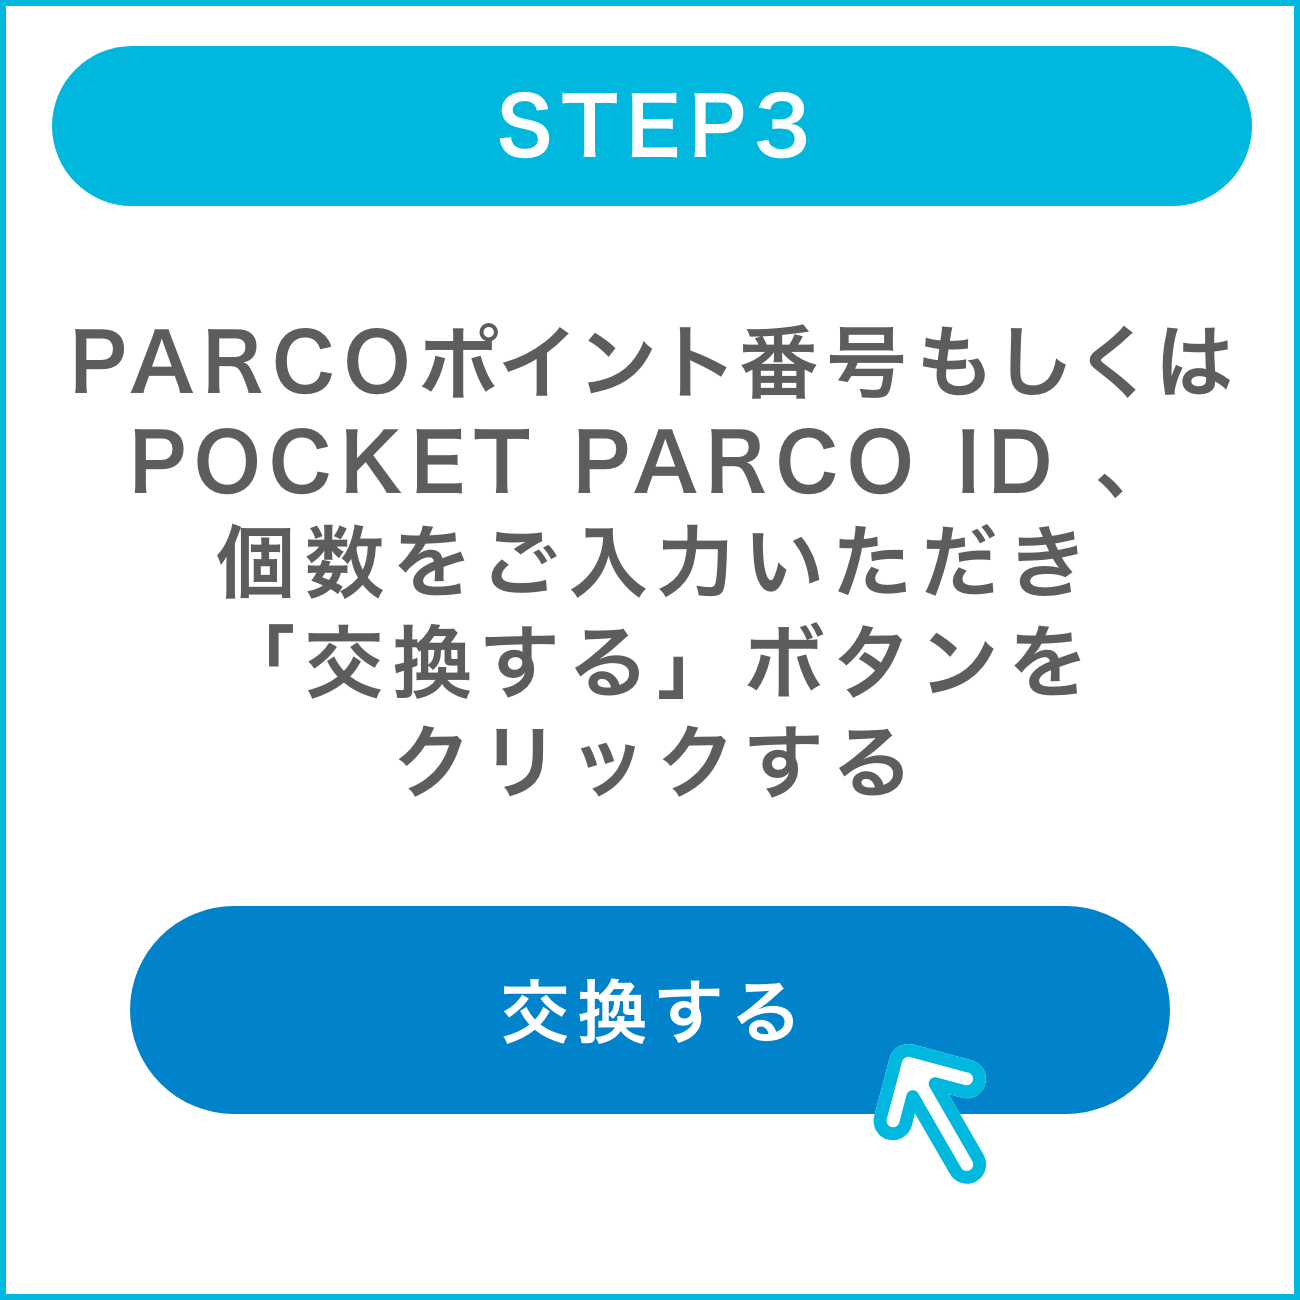 STEP3:PARCOポイント番号もしくはPOCKET PARCO ID 、個数をご入力いただき「交換する」ボタンをクリックする